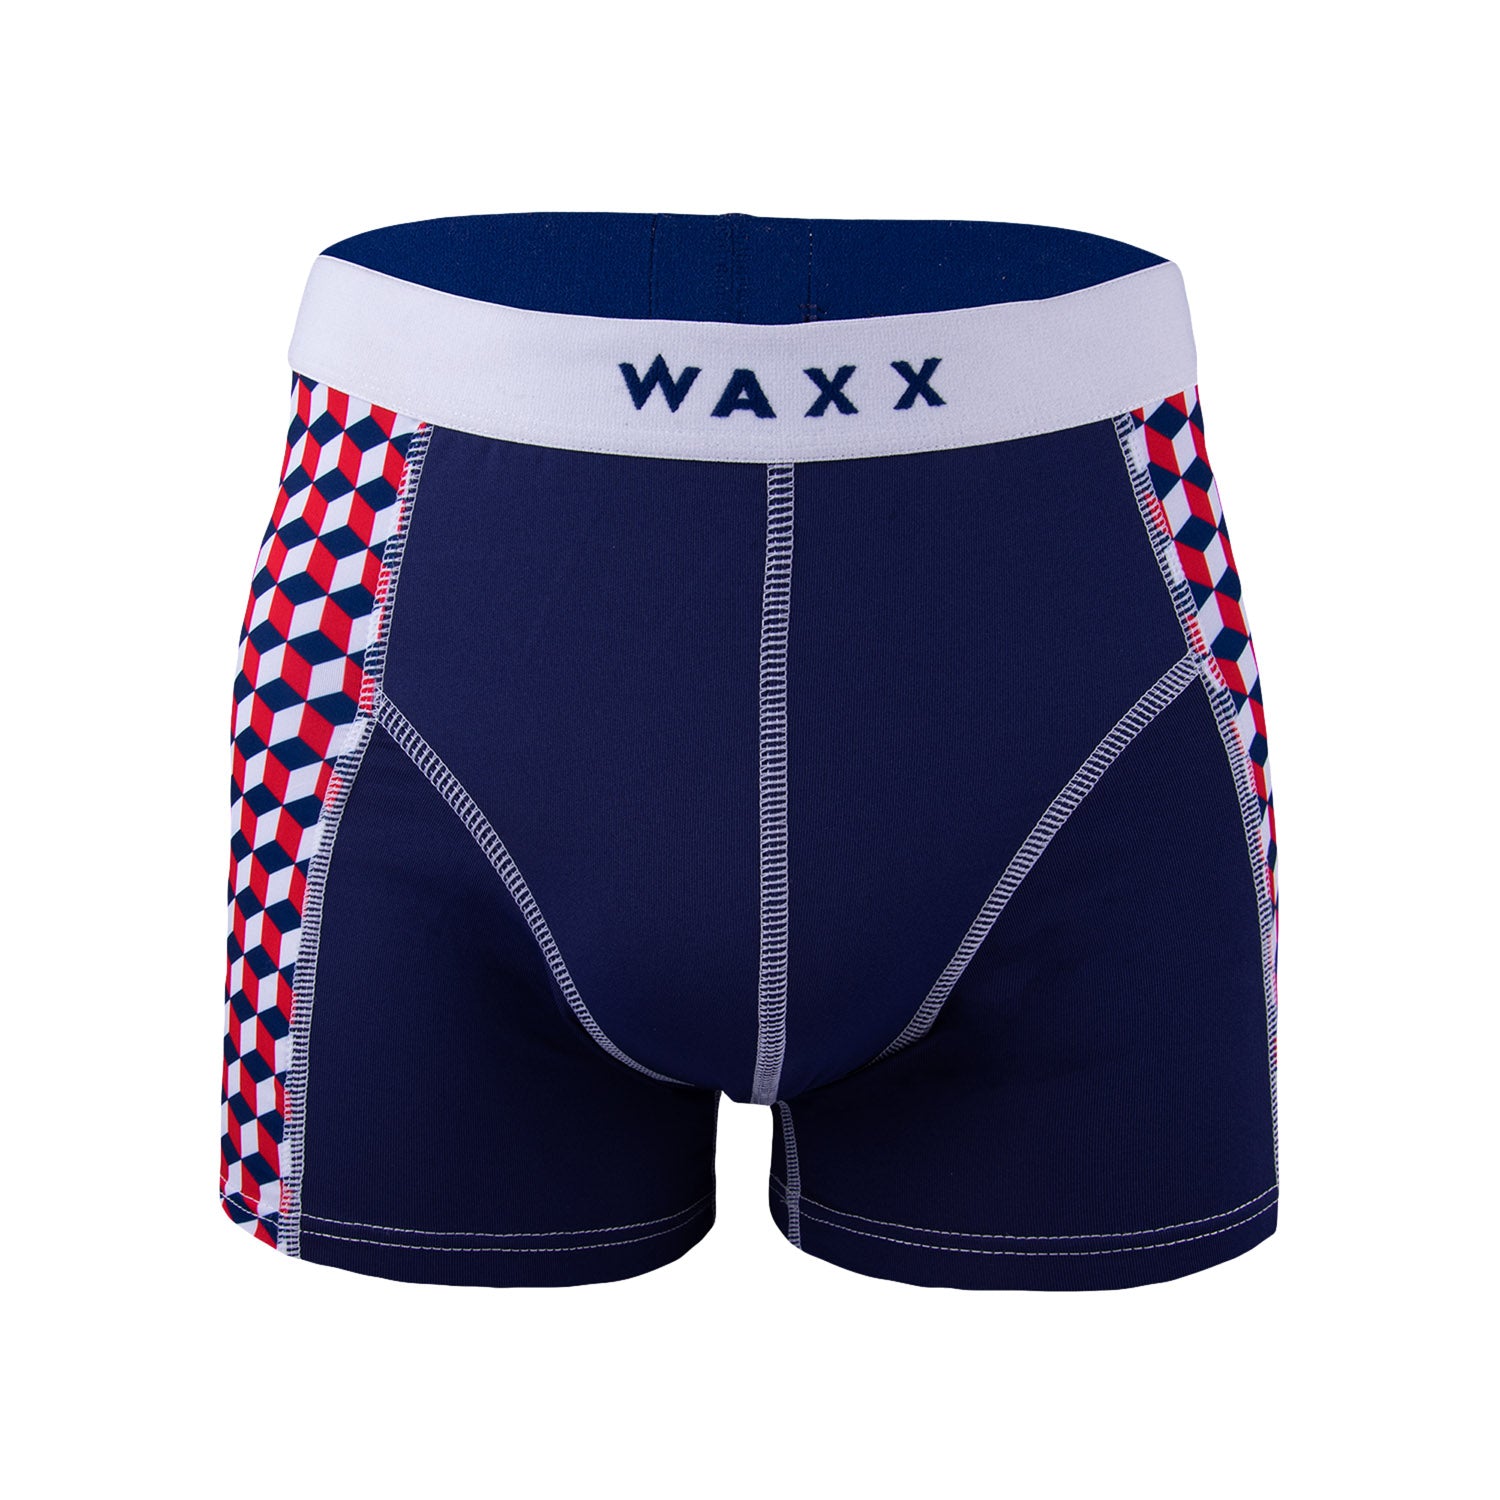 Waxx Men's Trunk Boxer Short Cubes